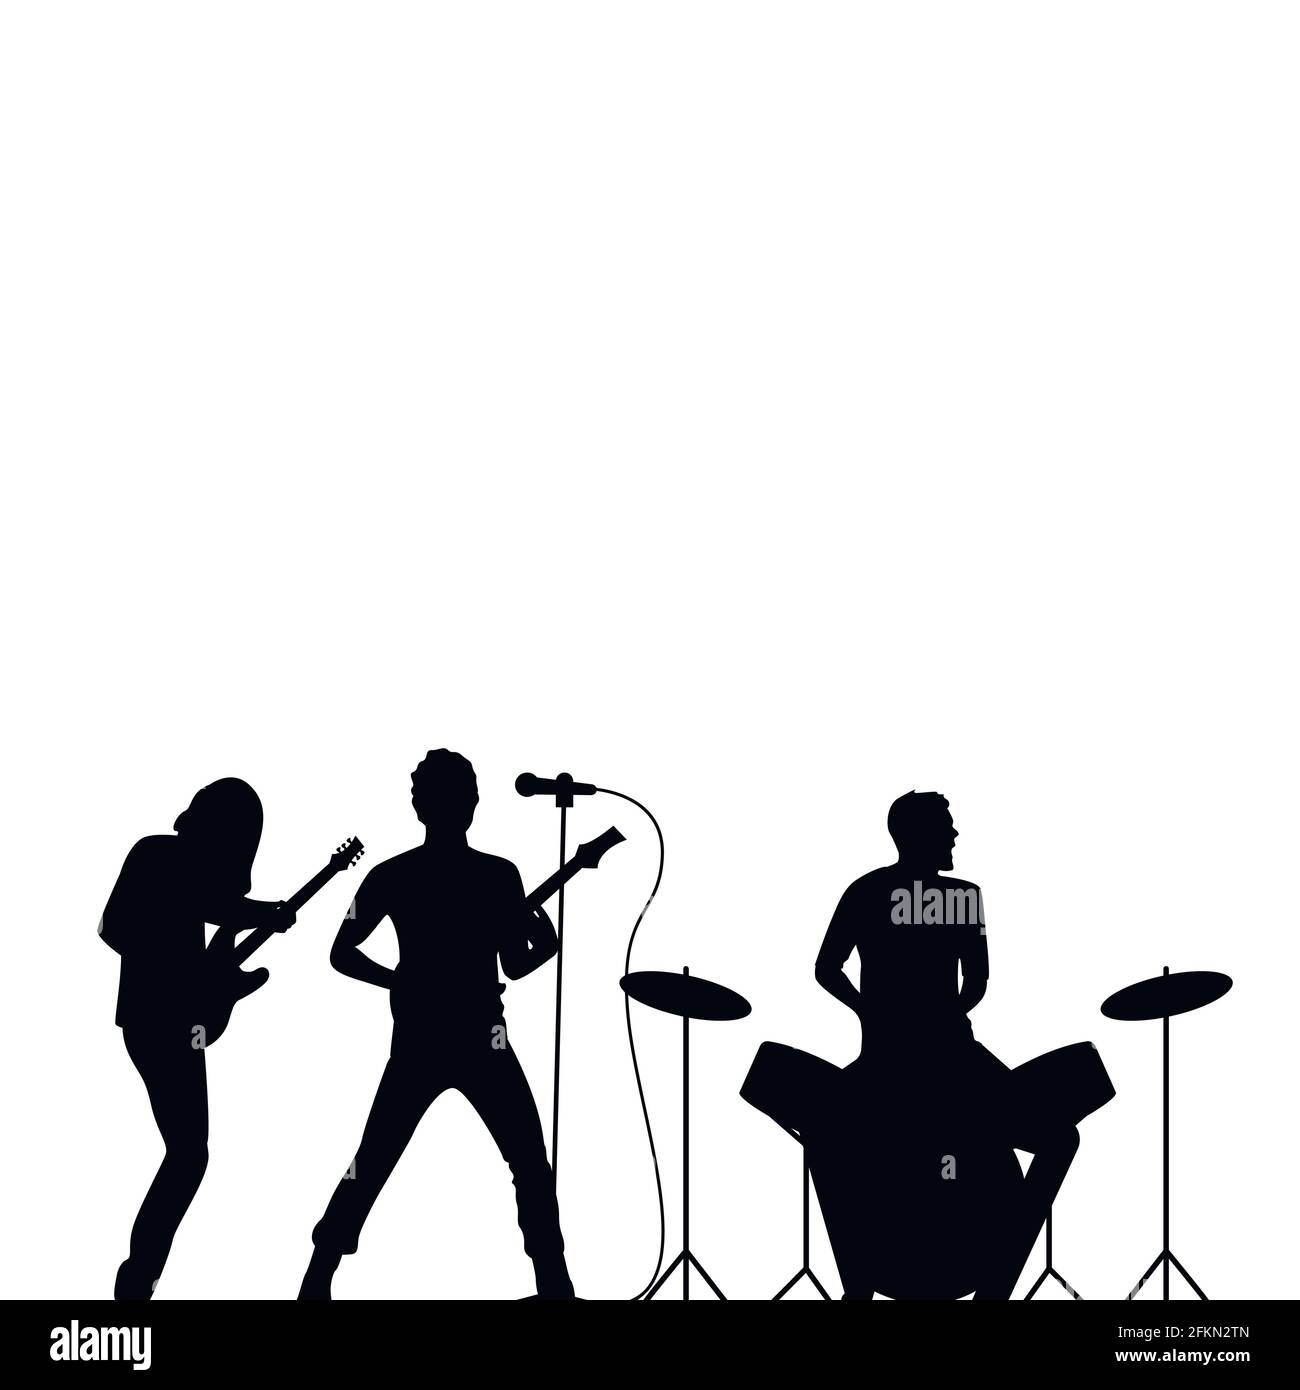 Batería de banda de rock, cantante y guitarrista silueta negra, papel tapiz de rock. Concierto de rock, banda musical, ilustración de la escena silueta vect Ilustración del Vector